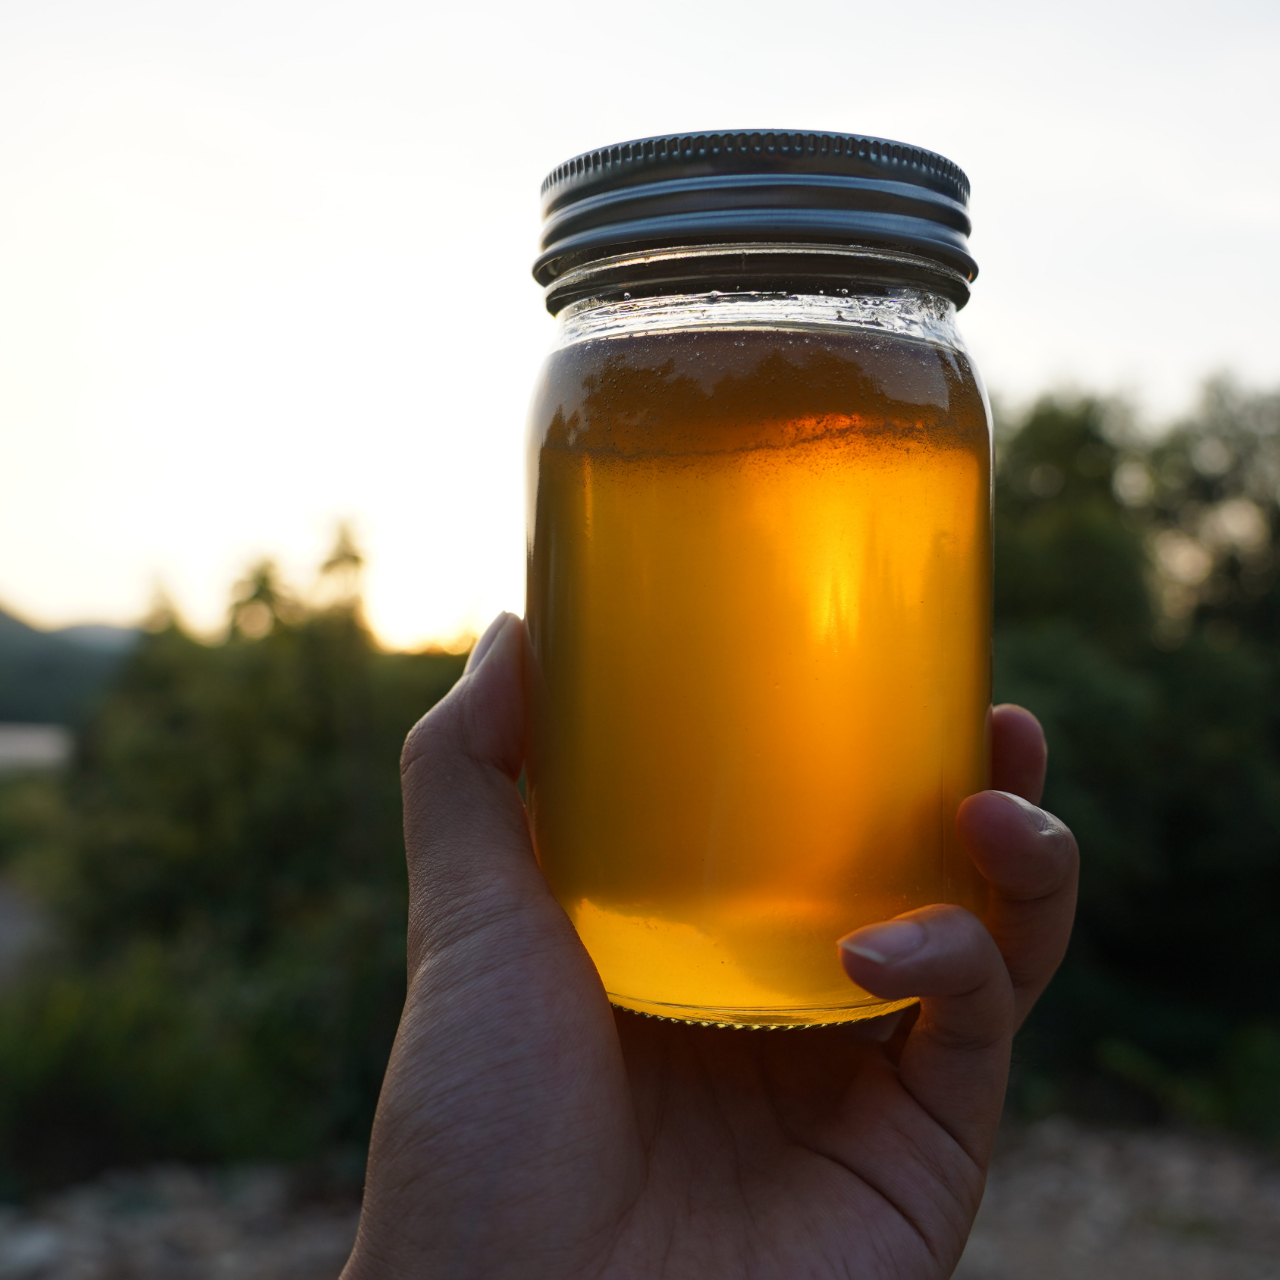 华农兄弟土蜂蜜纯正天然百花蜜农产品500g无加工无浓缩天然原蜜